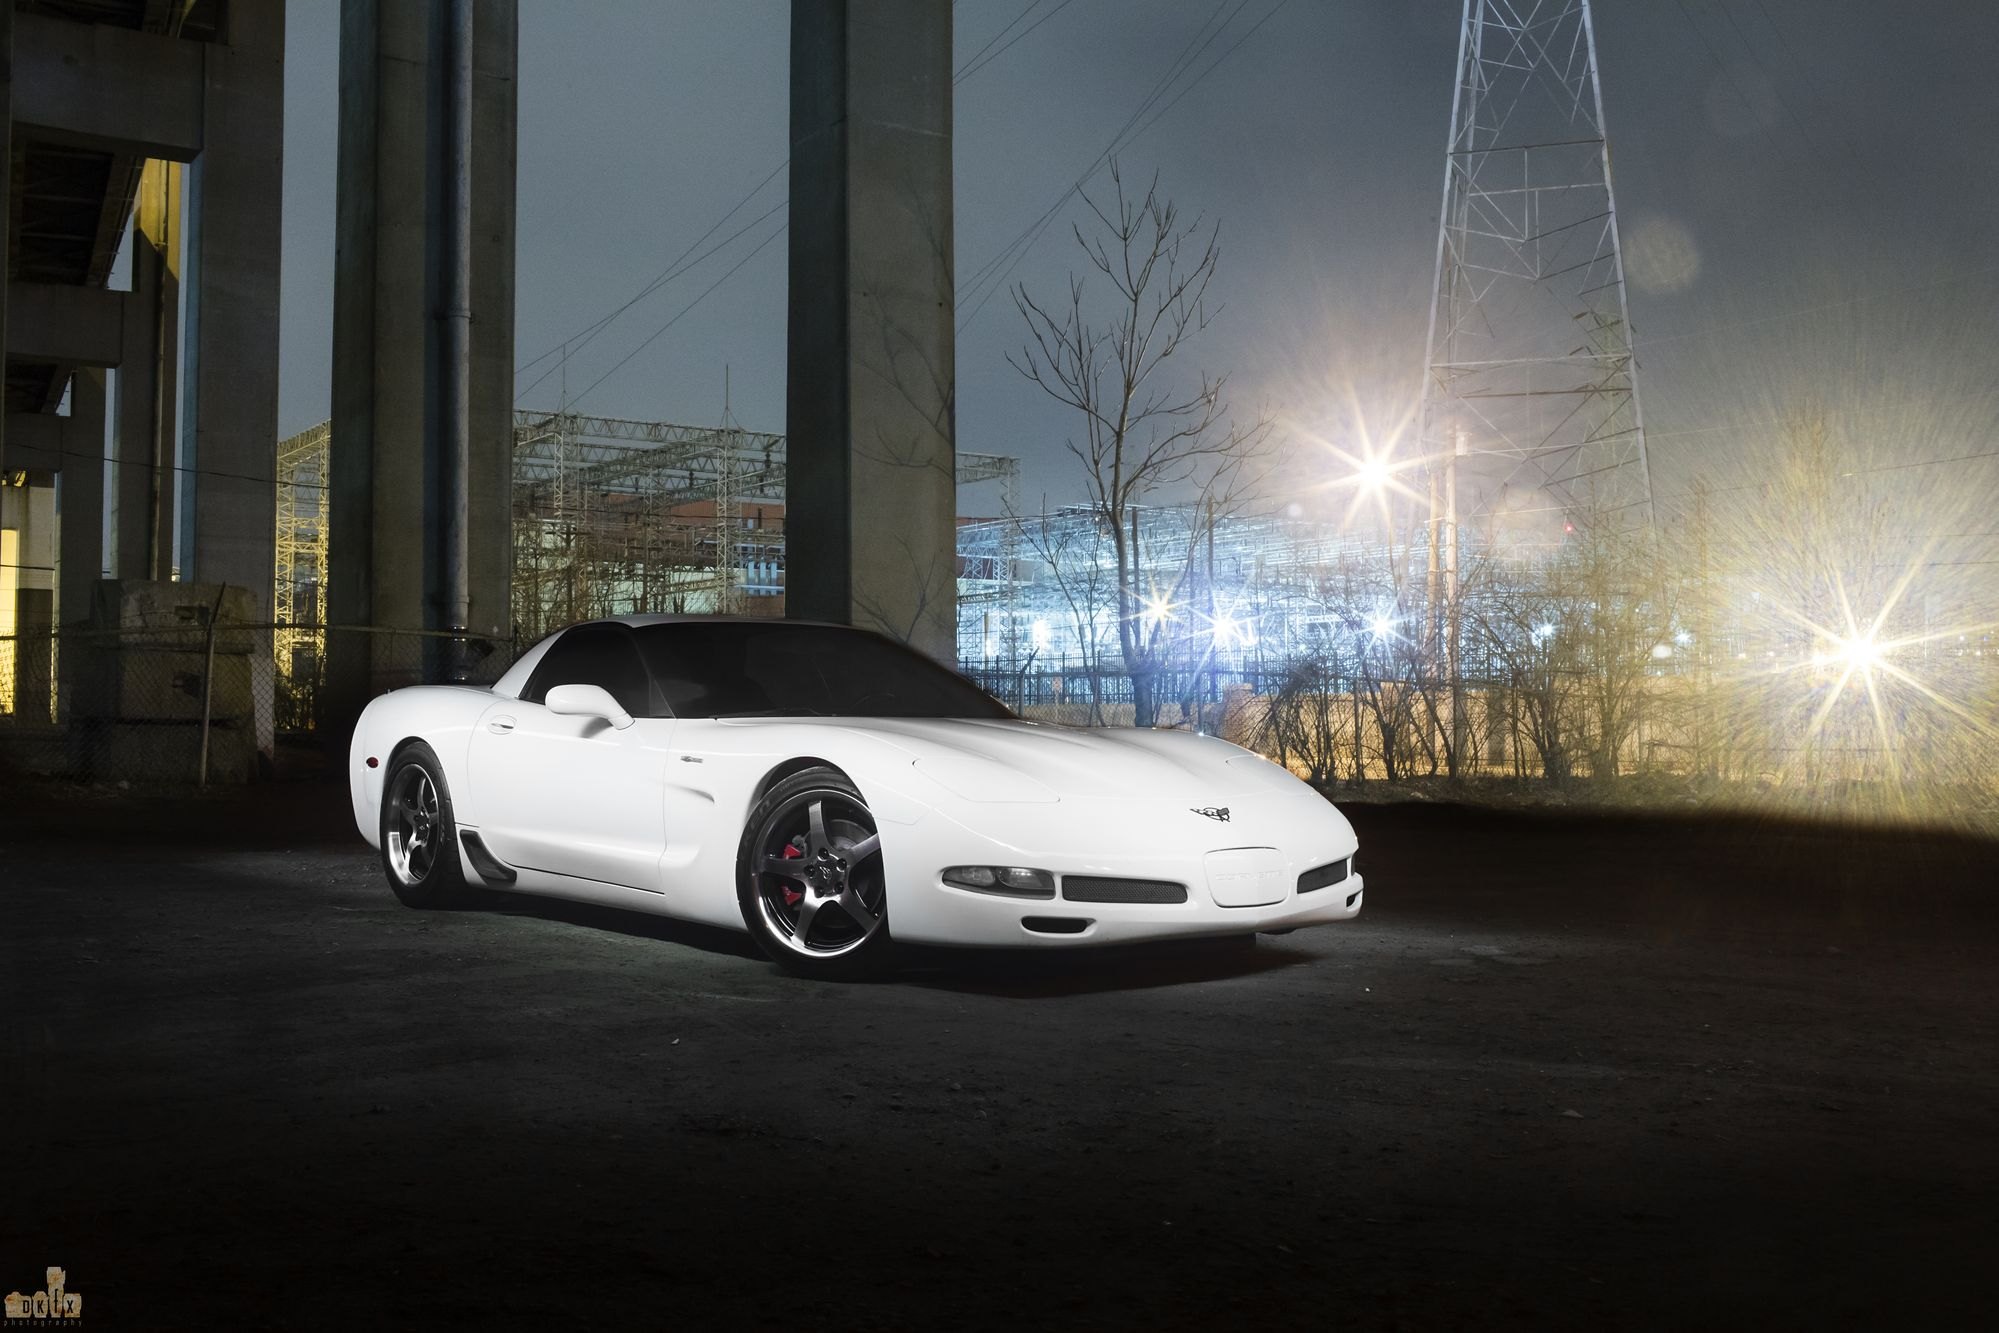 White Chevy Corvette with Dark Smoke Headlights - Photo by dan kinzie